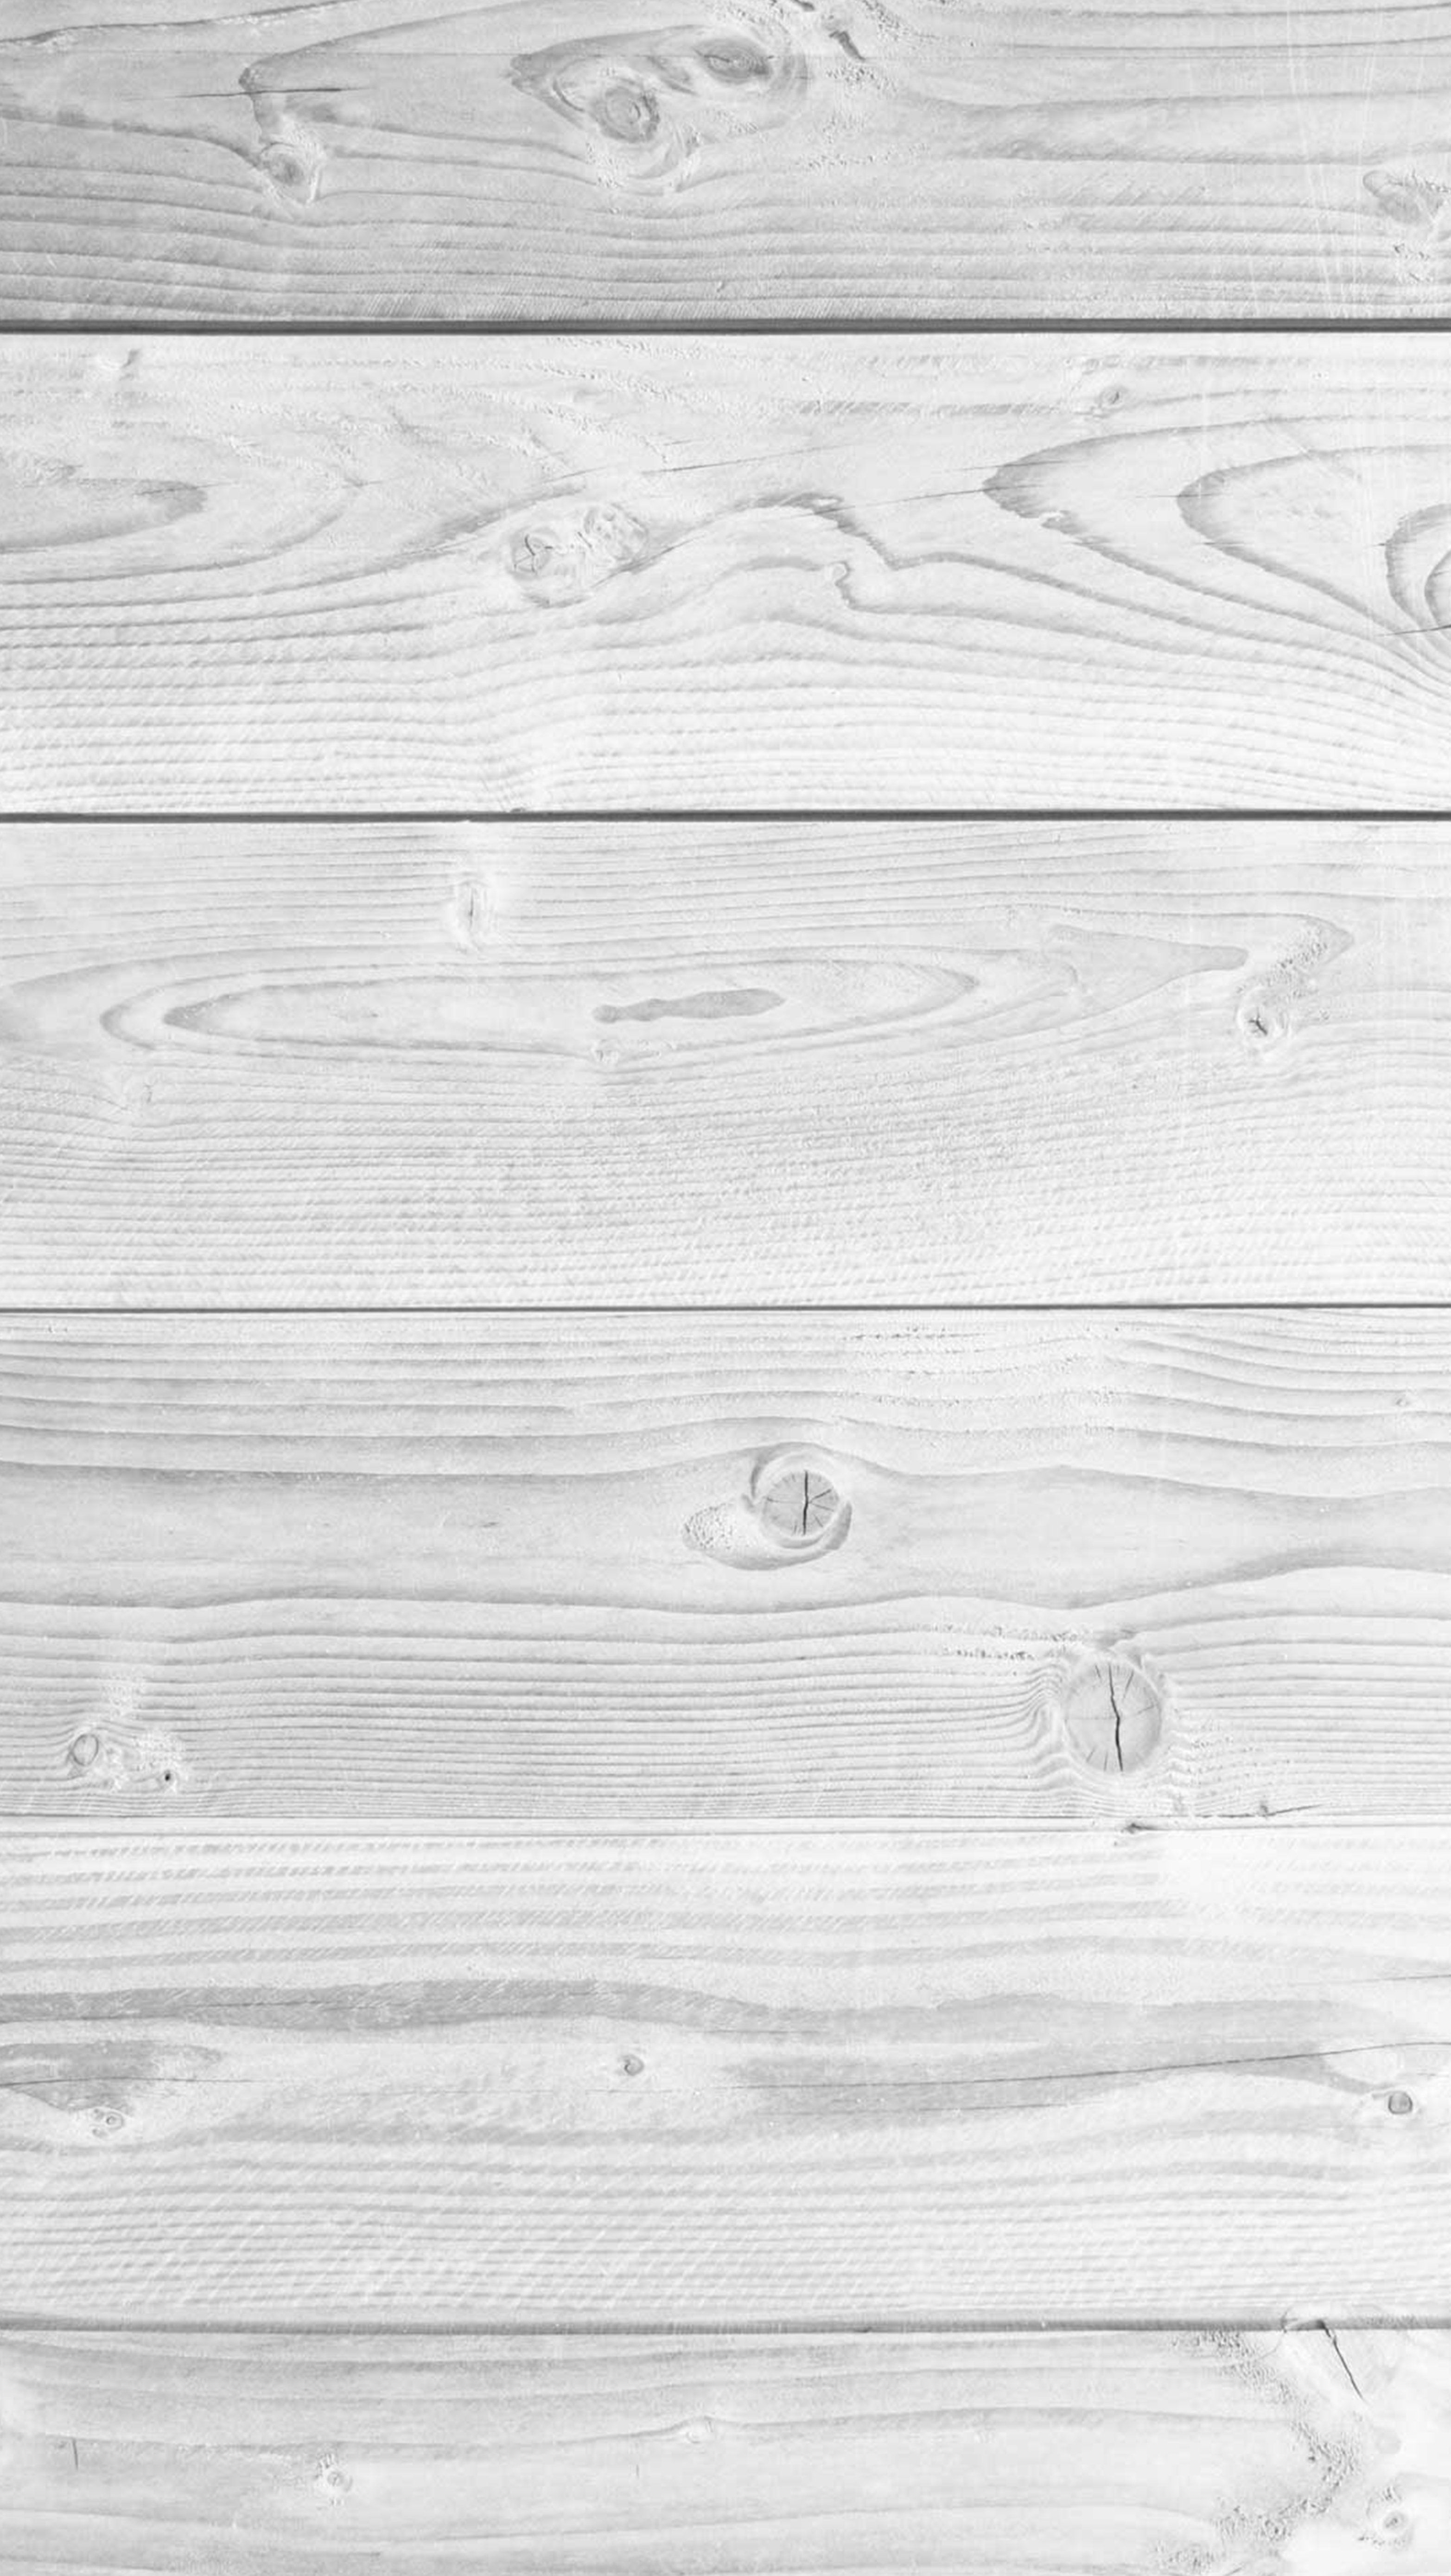 دانلود رایگان تکسچر چوب سفید با بافت خط های طبیعی افقی 